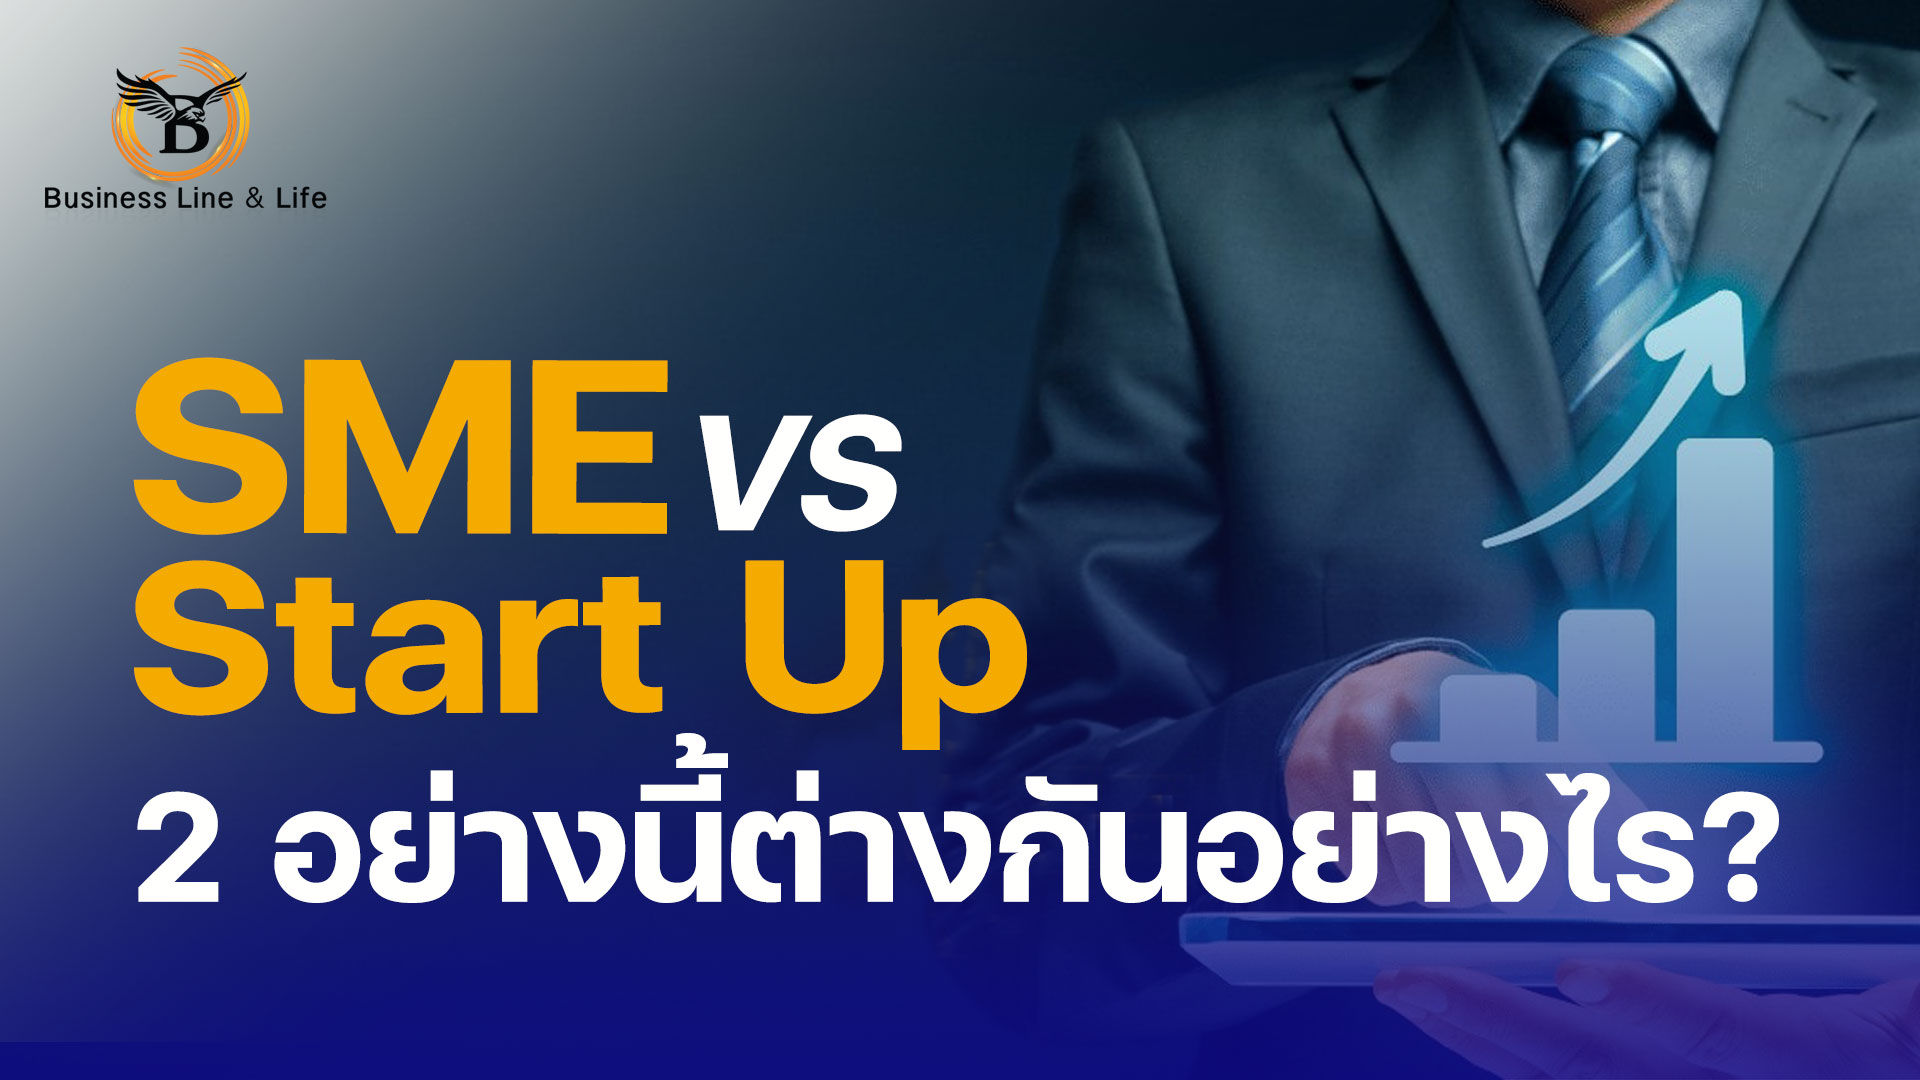 มาทำความรู้จัก SMEs กับ Start Up สองอย่างนี้แตกต่างกันอย่างไร